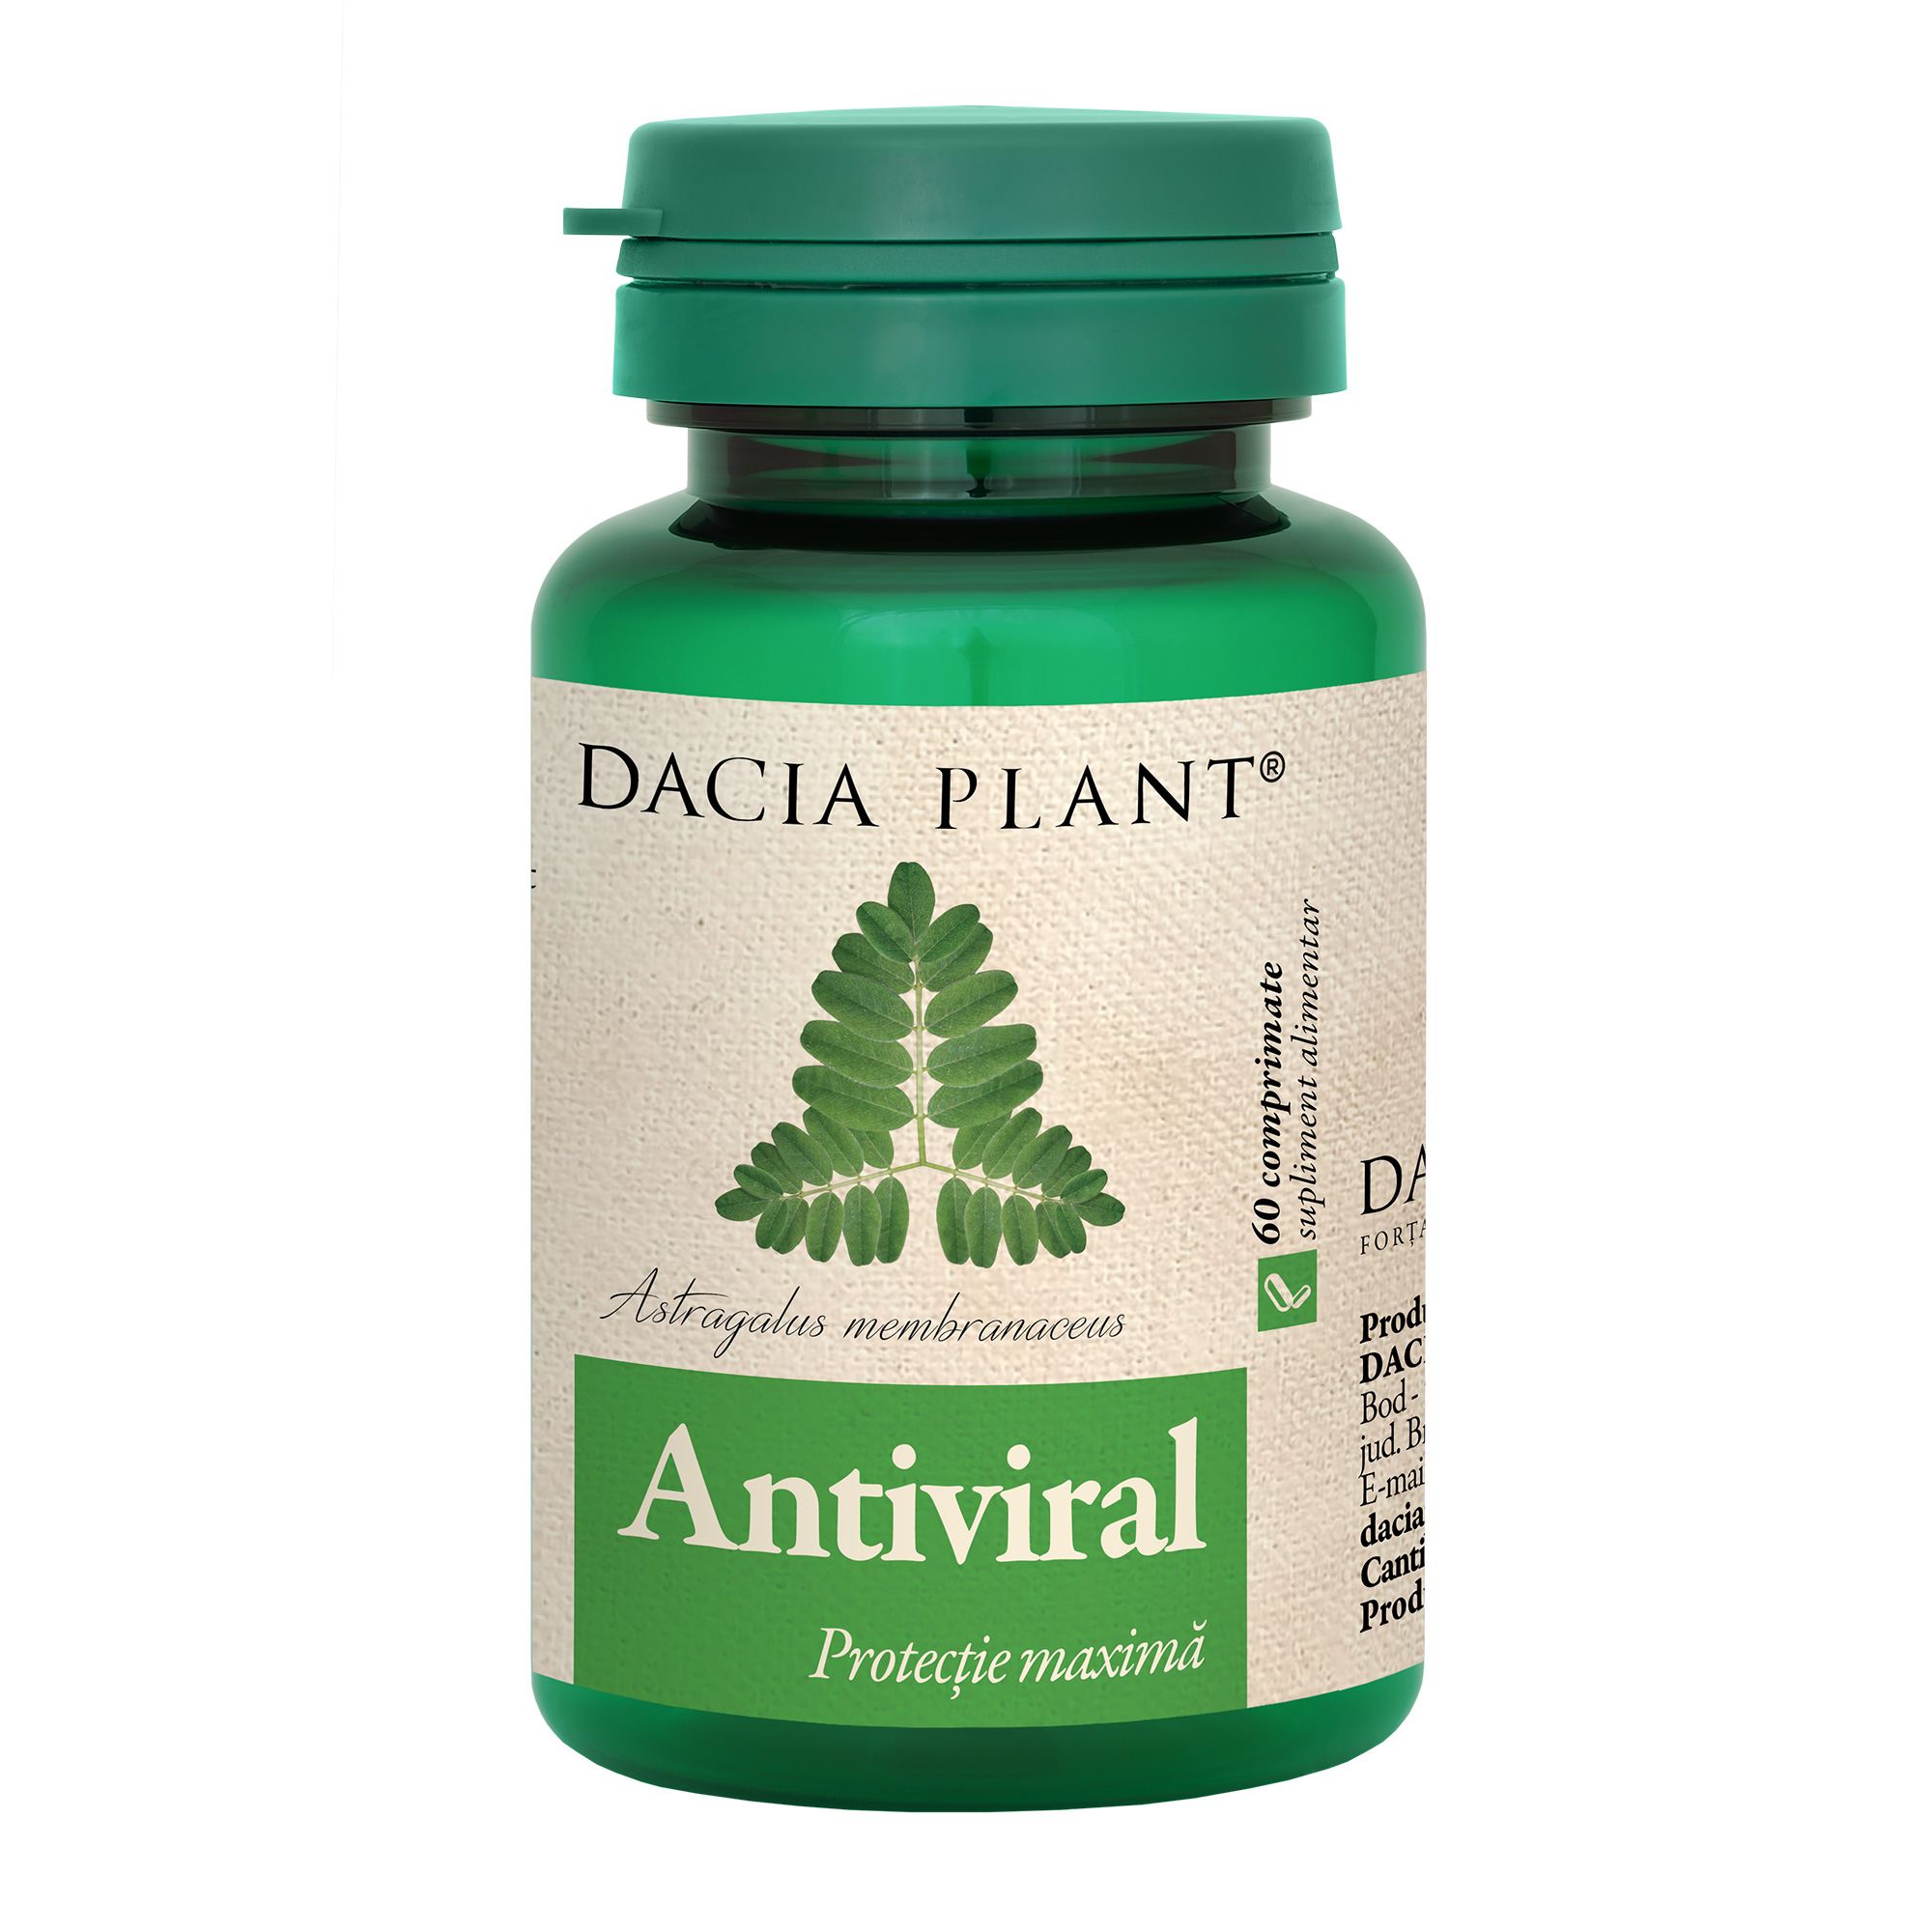 Antiviral comprimate Dacia Plant